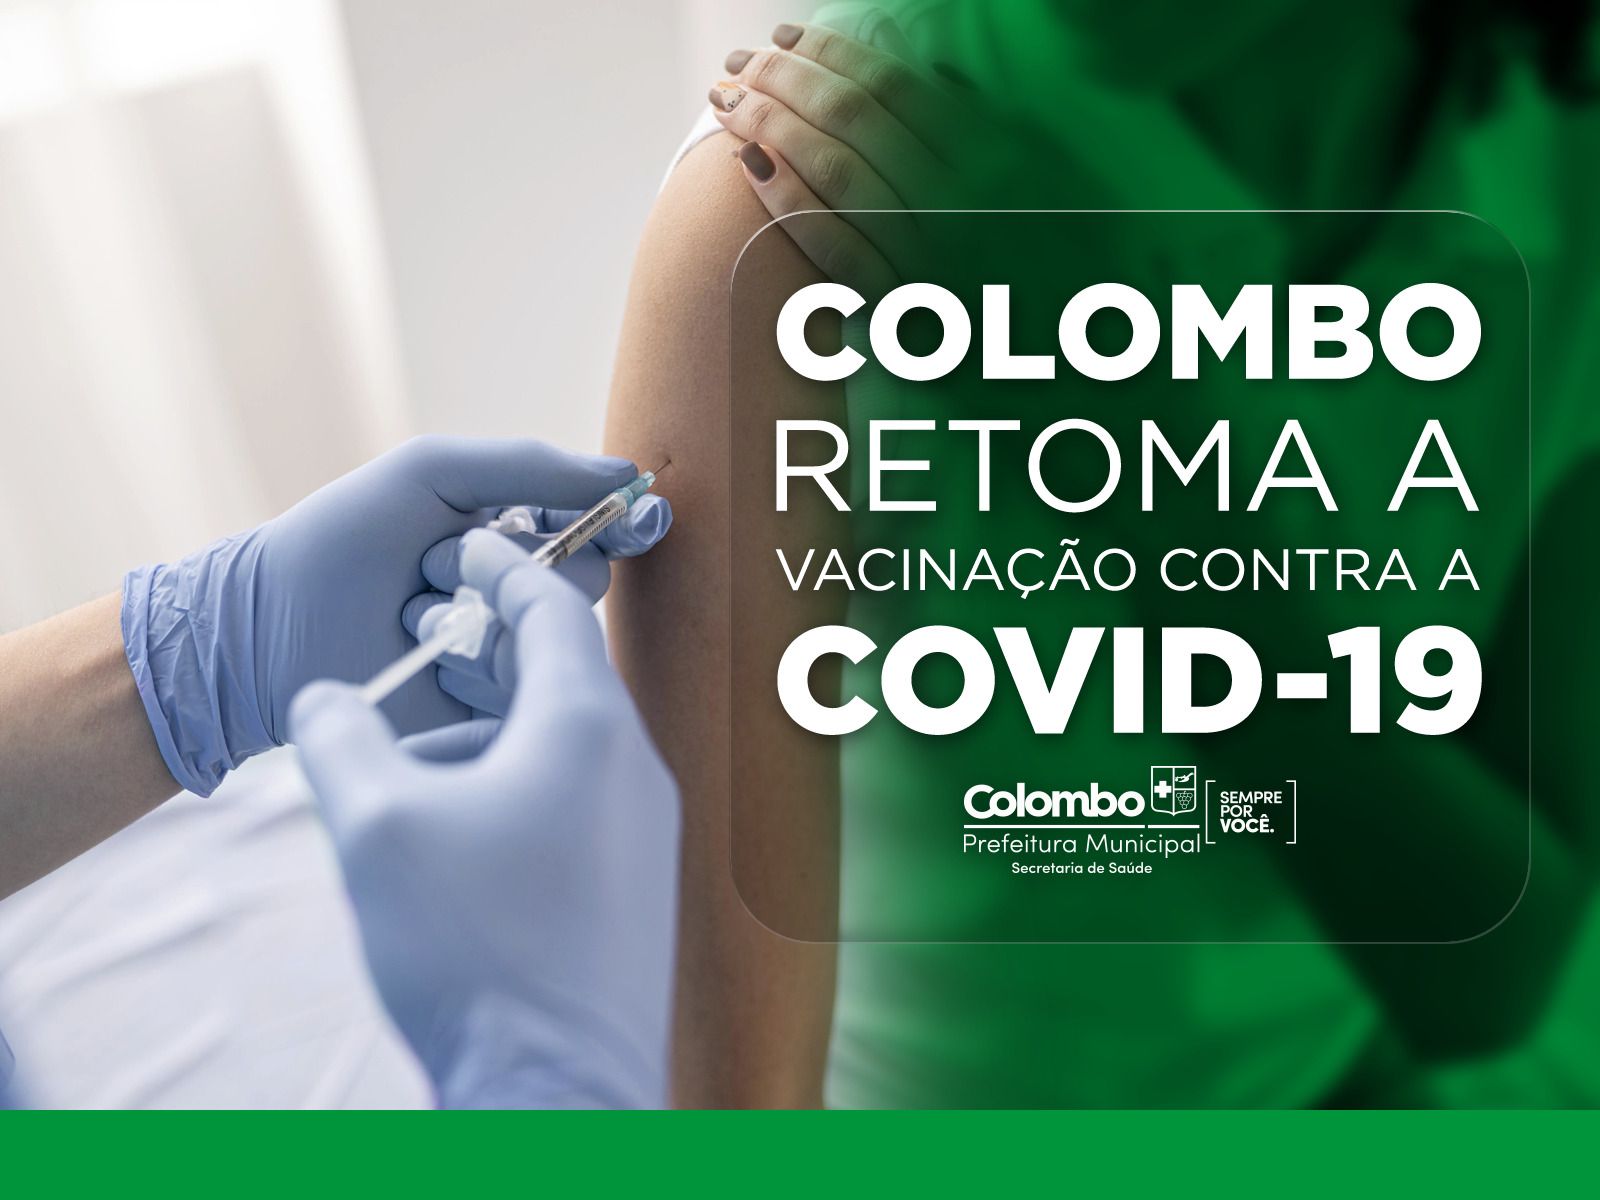 Colombo retoma a vacinação do COVID-19 nesta segunda-feira, 20